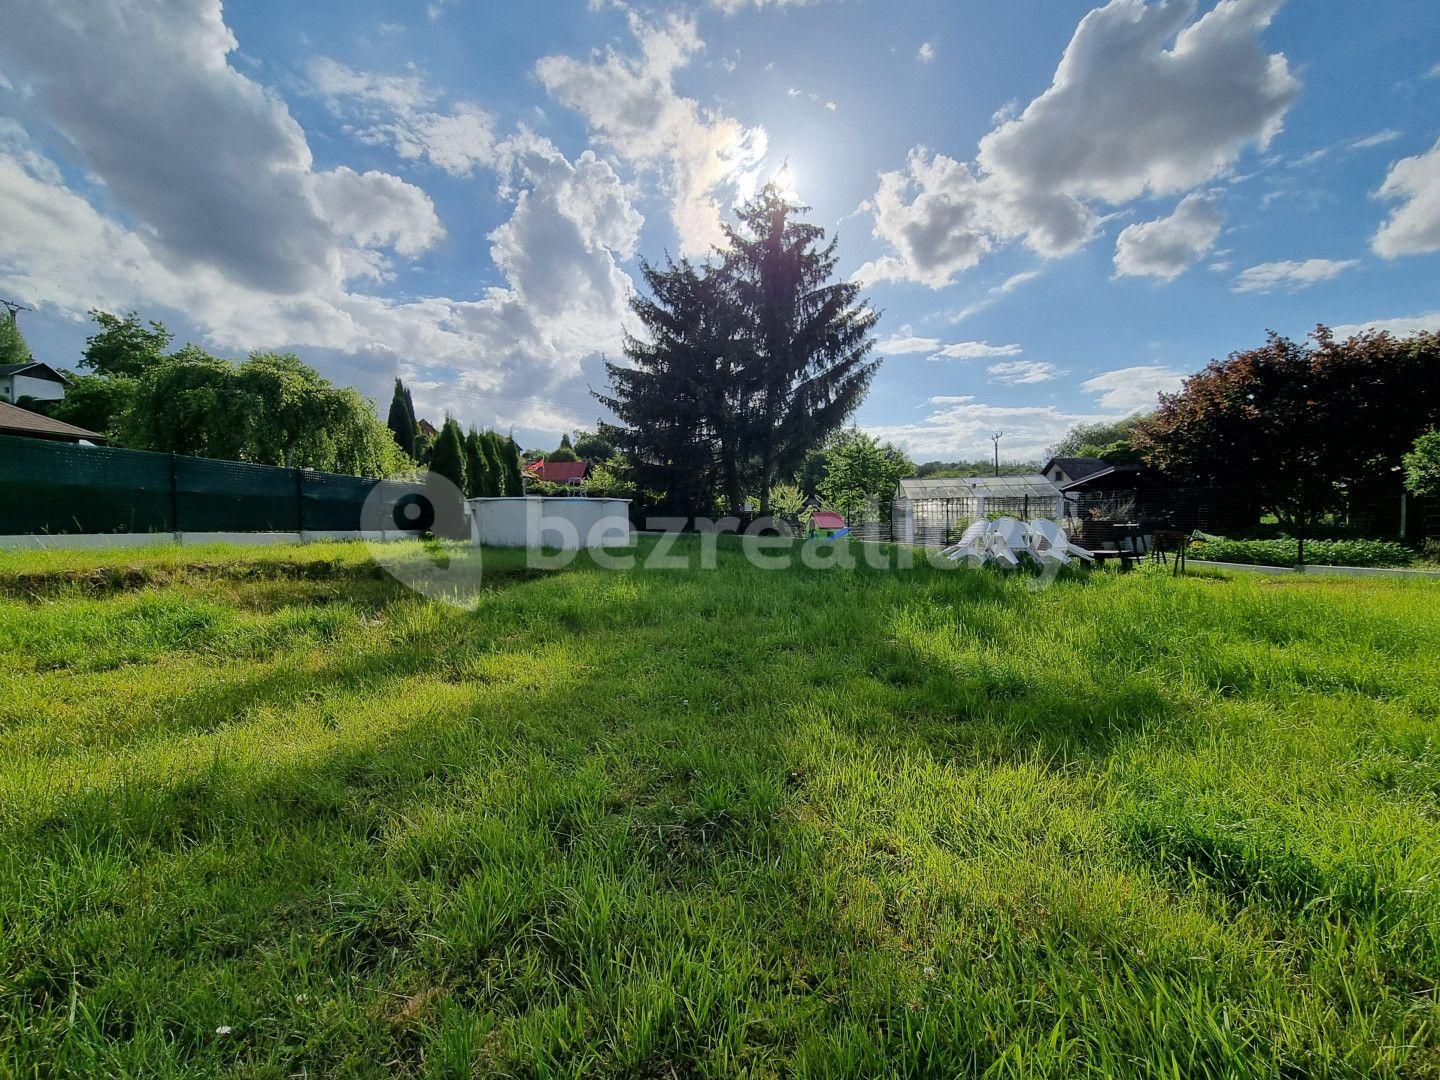 Prodej chaty, chalupy 16 m², pozemek 491 m², Karlovy Vary, Karlovarský kraj